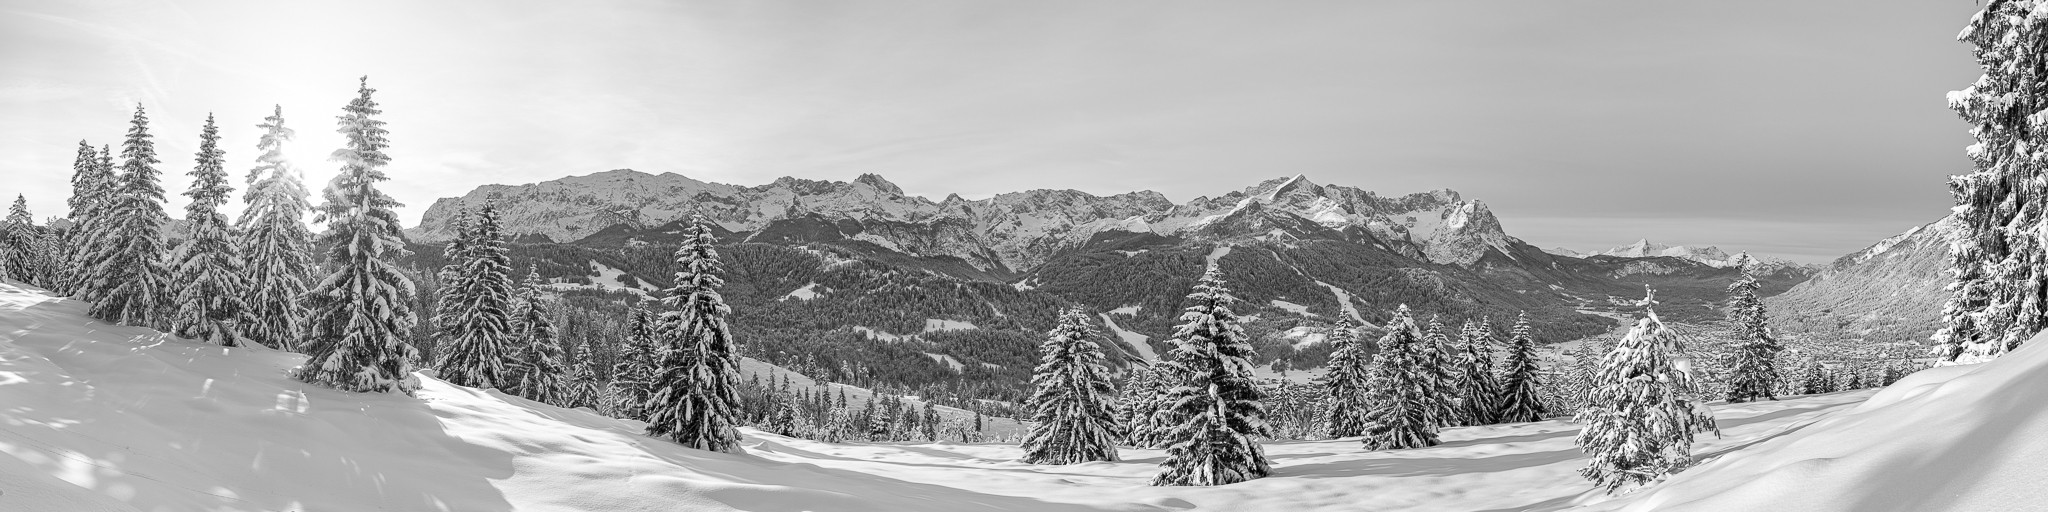 Schwarz-weiß: Winterwald oberhalb von Garmisch-Partenkirchen mit einem wunderbaren Panoramablick auf das Wettersteingebirge mit Zugspitze und Alpspitze.